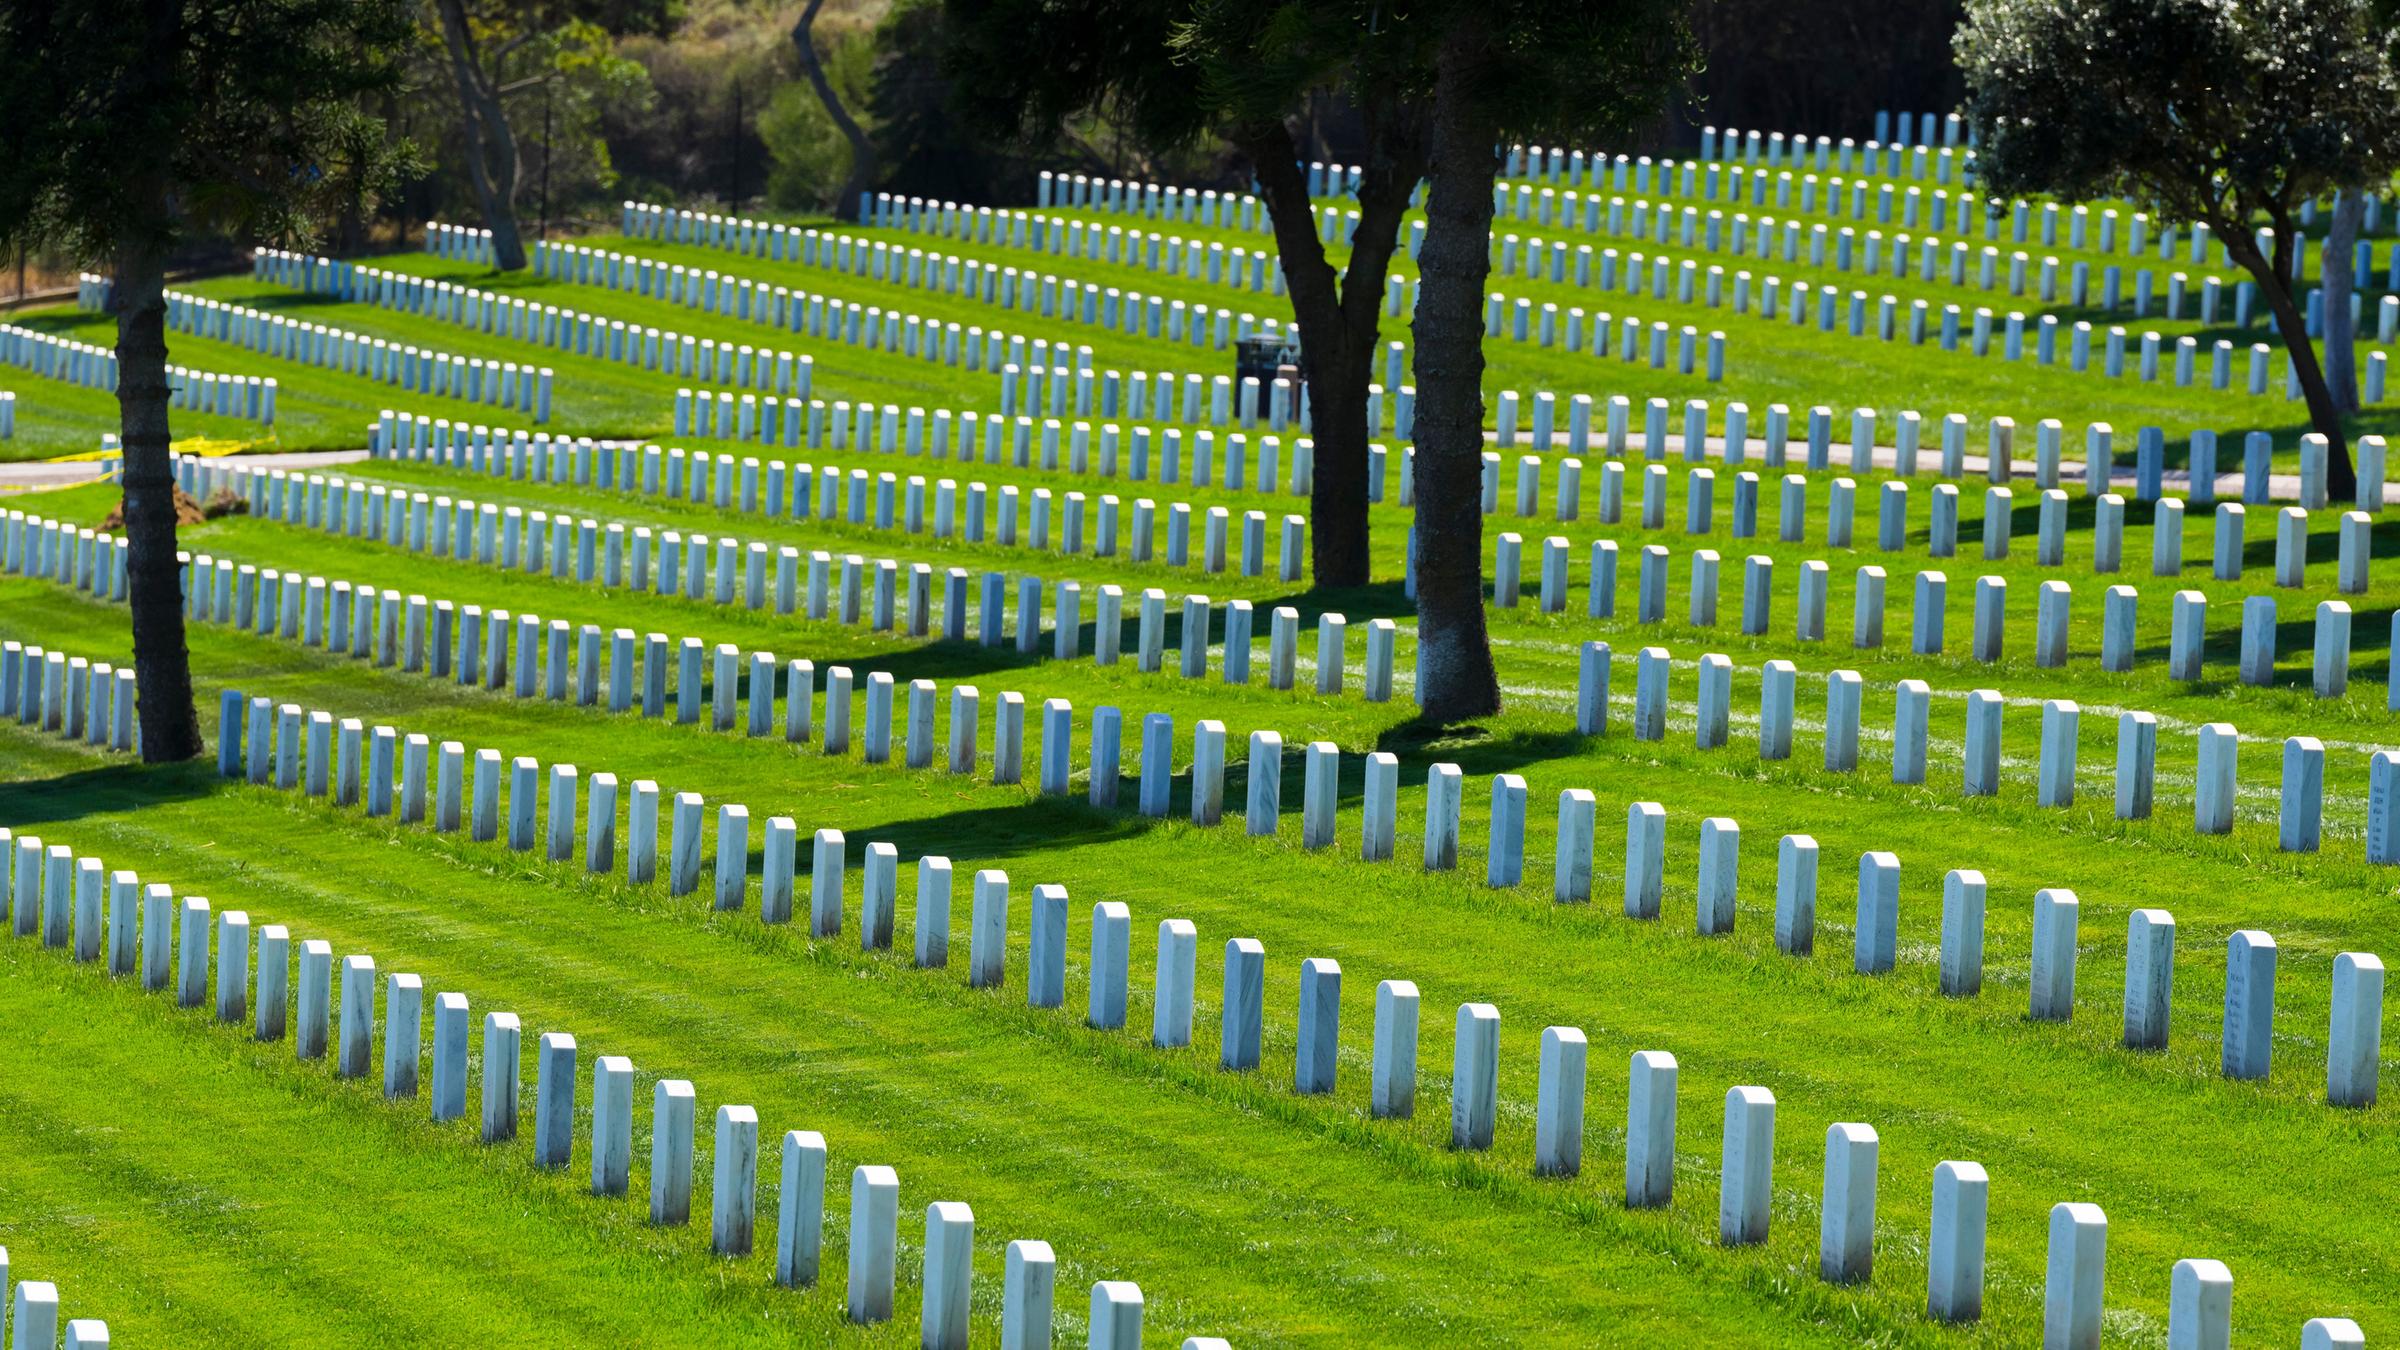 Ein Veteranenfriedhof in den USA: Viele schmale, hohe und helle Grabsteine stehen auf einer großen Rasenfläche.